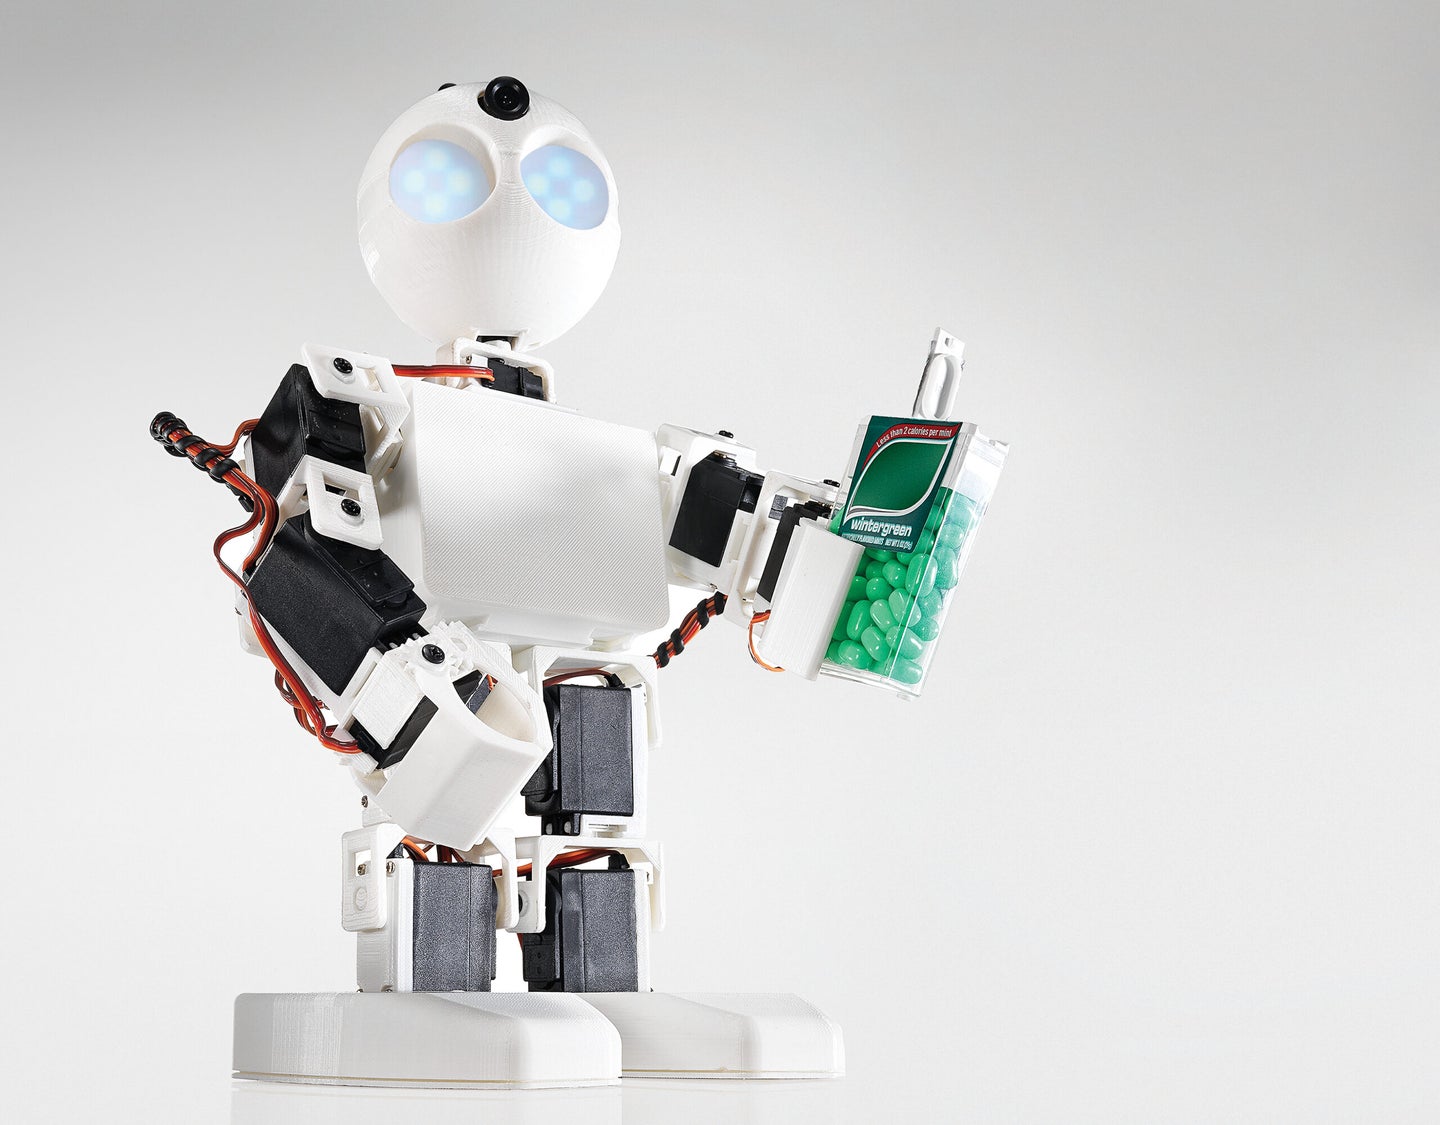 Finally, A Super-Simple Modular Robotics Kit